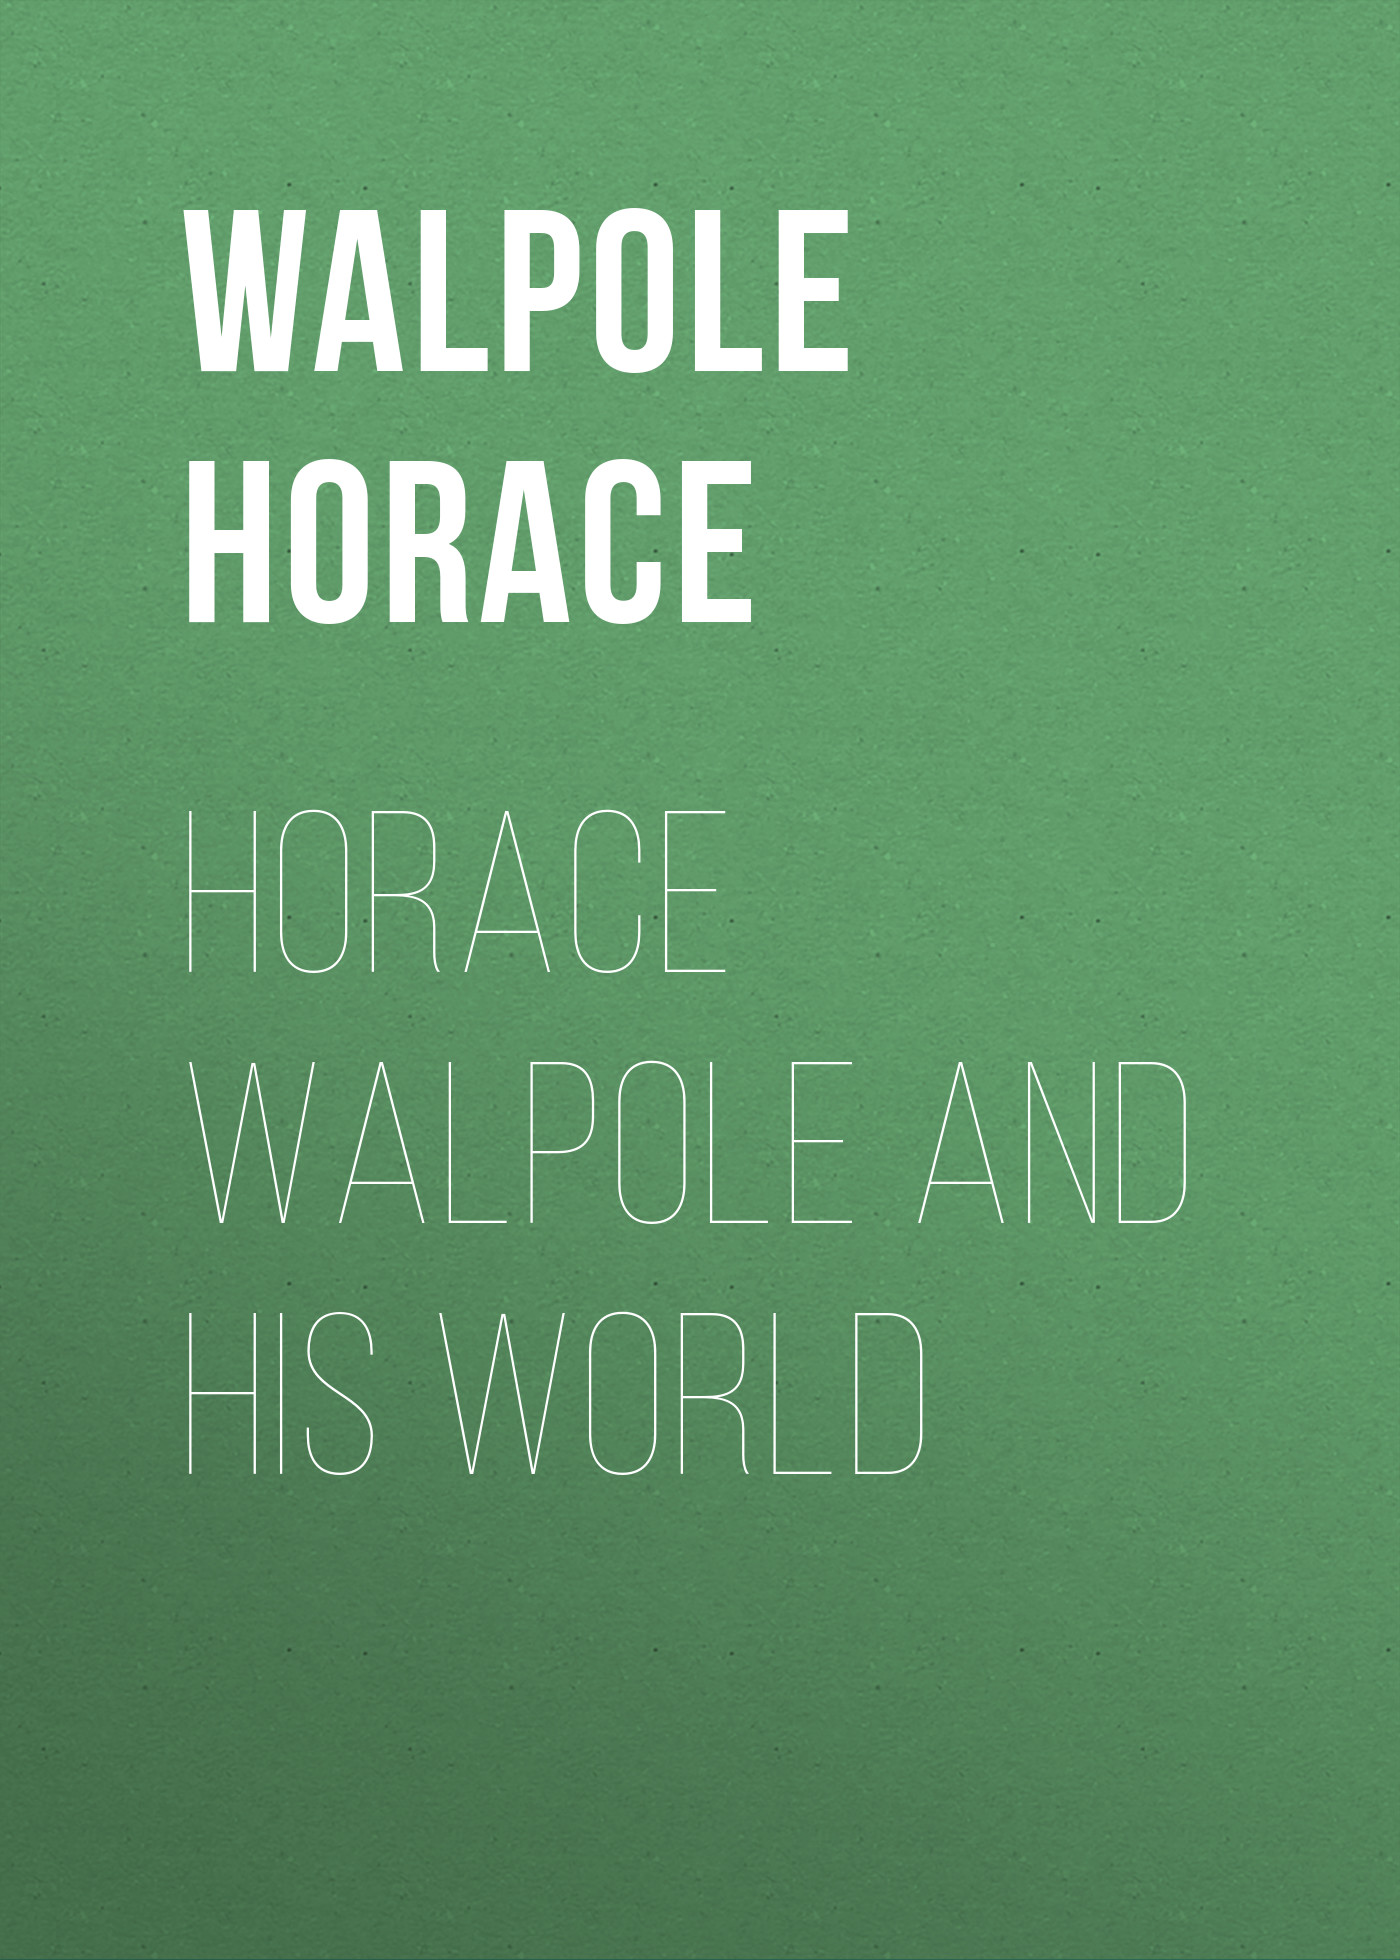 Книга Horace Walpole and his World из серии , созданная Horace Walpole, может относится к жанру Зарубежная классика, Зарубежная старинная литература. Стоимость электронной книги Horace Walpole and his World с идентификатором 34283416 составляет 0 руб.